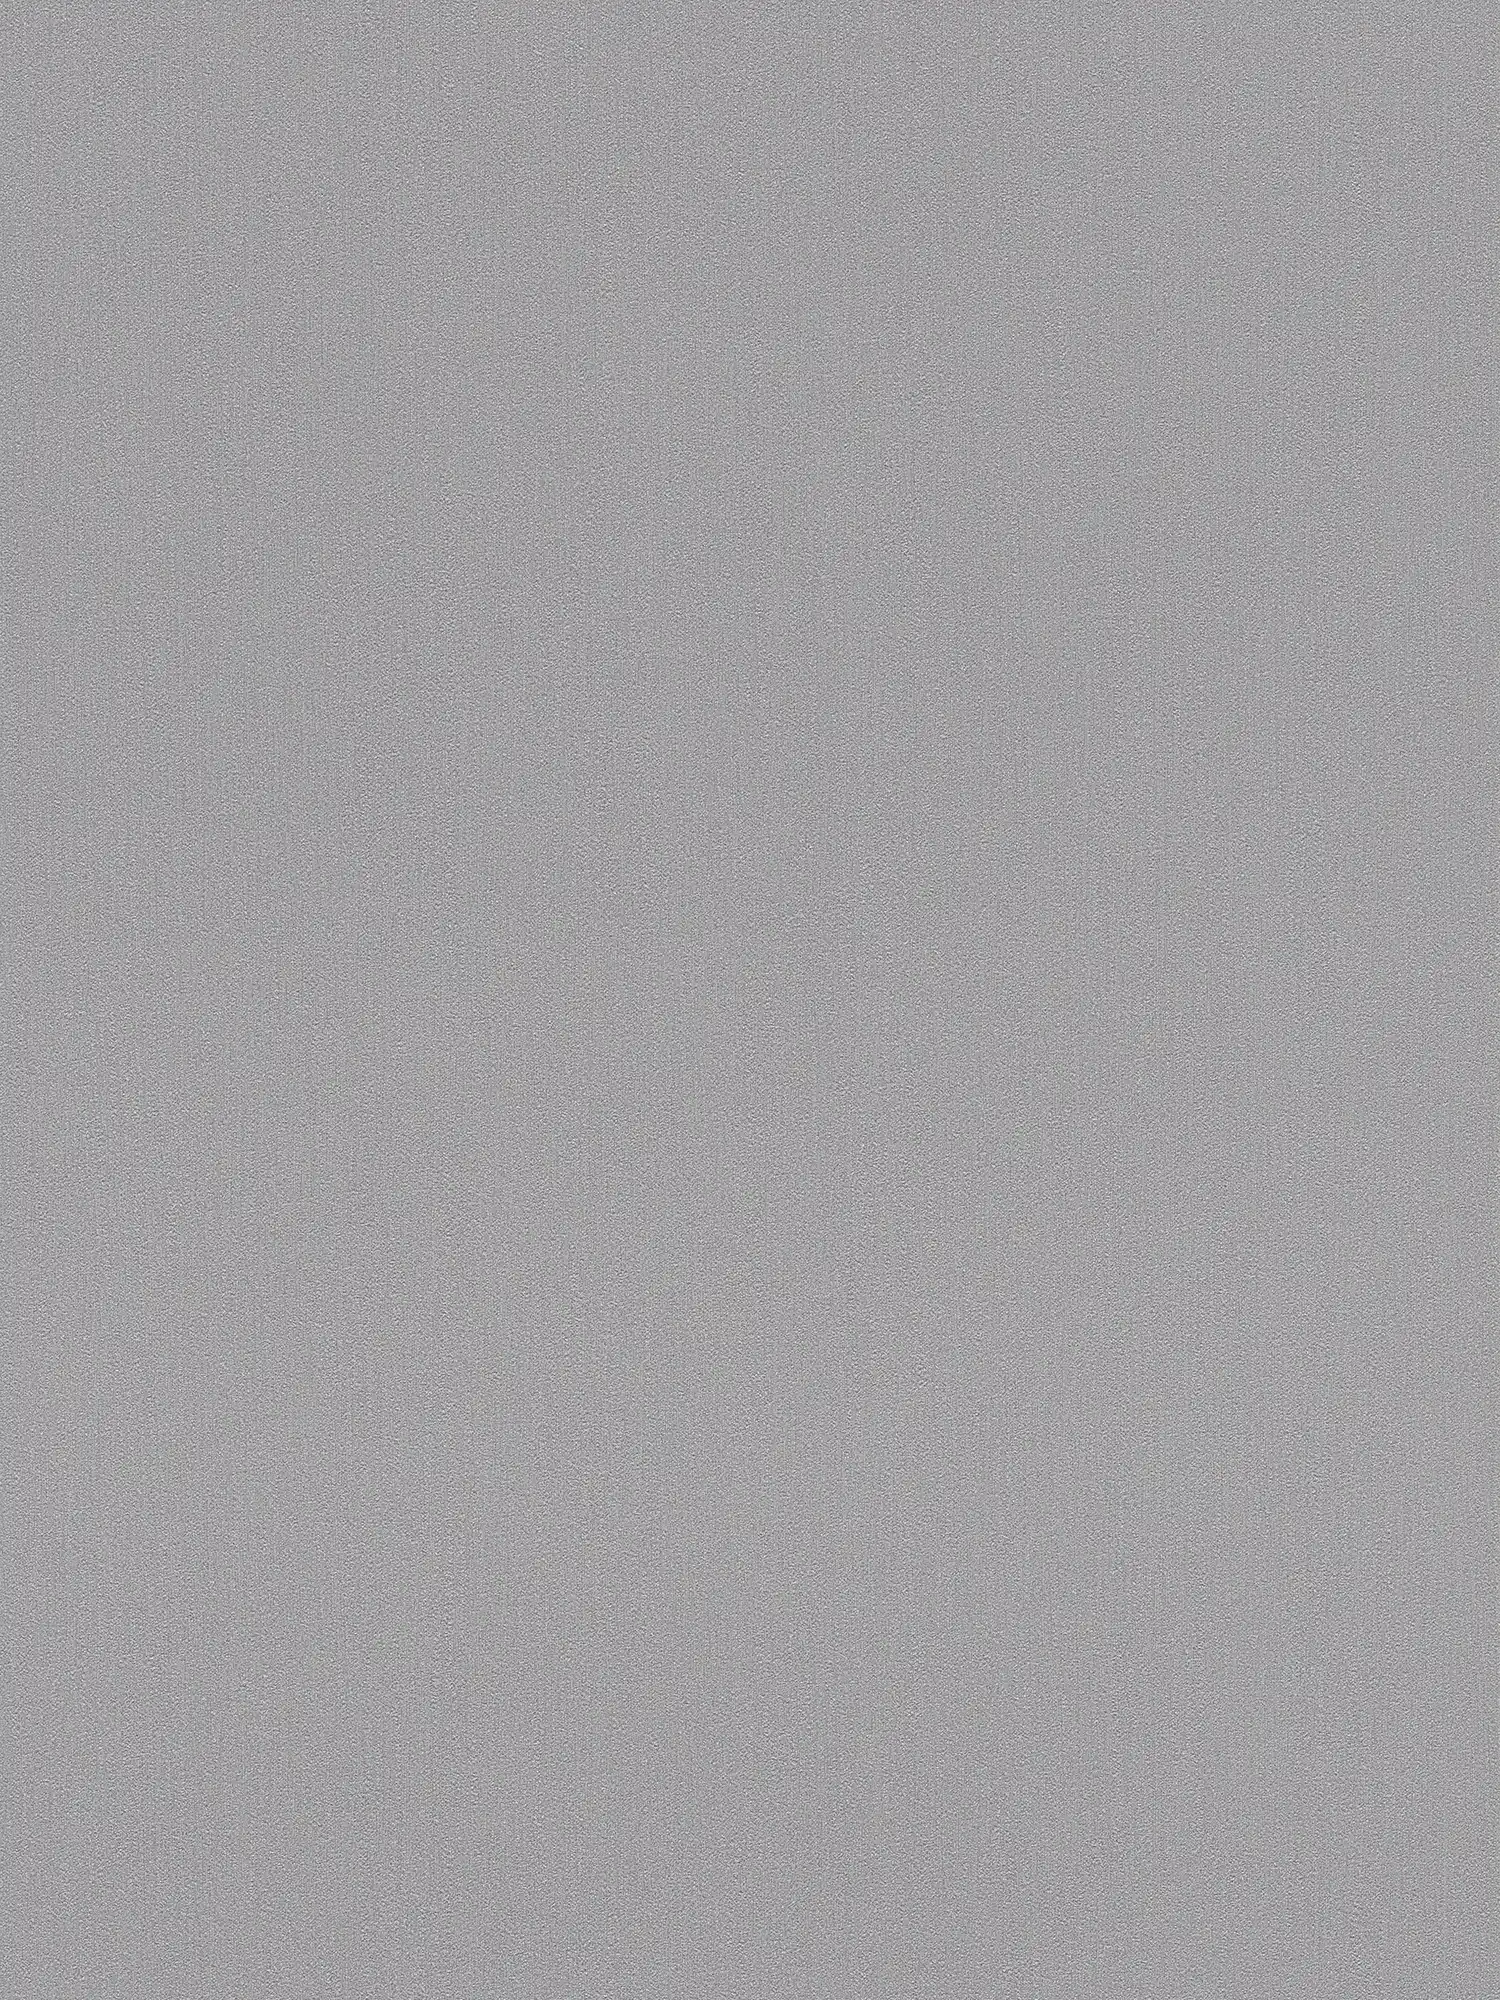 Carta da parati Karl LAGERFELD monocromatica con texture - grigio
